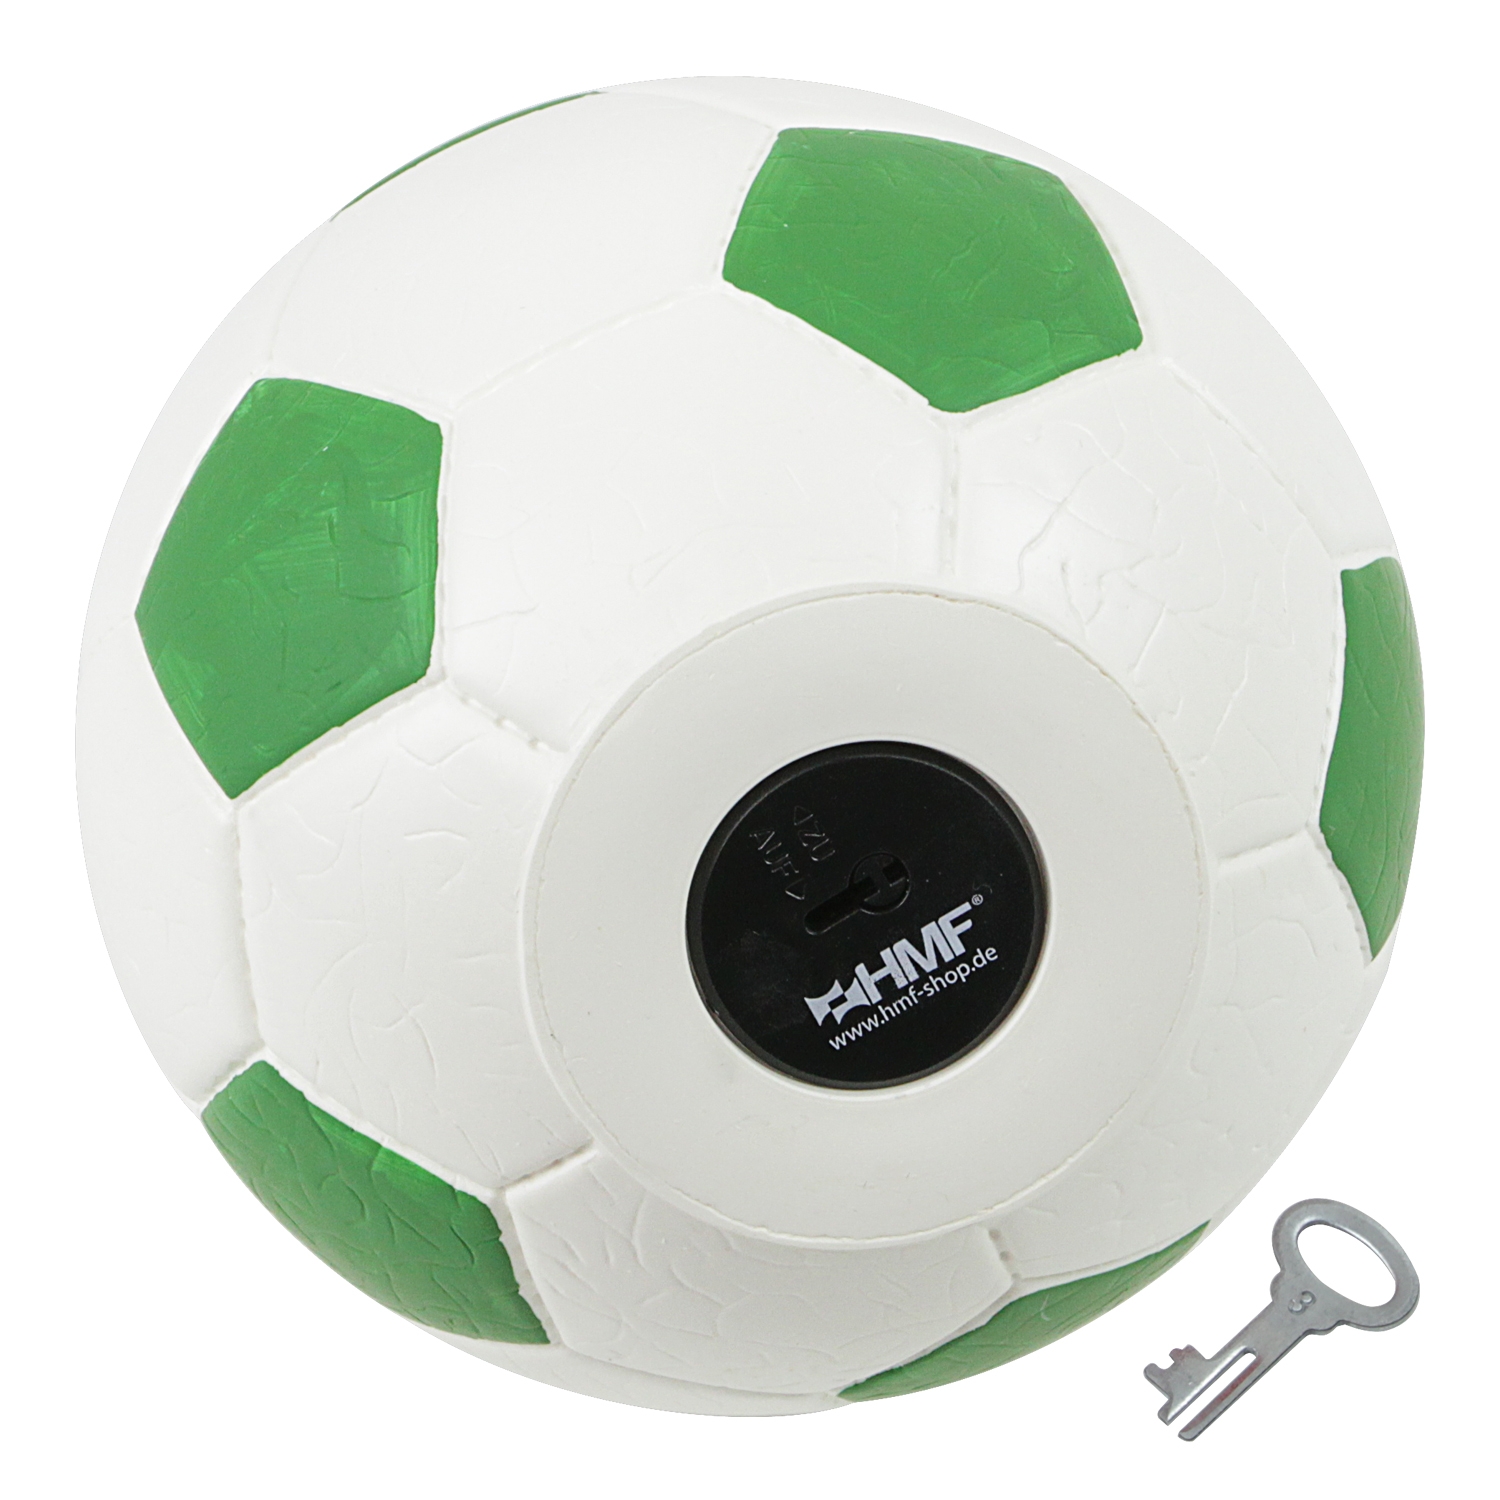 Spardose im Fußball-Look von HMF mit 15 cm Durchmesser in Grün